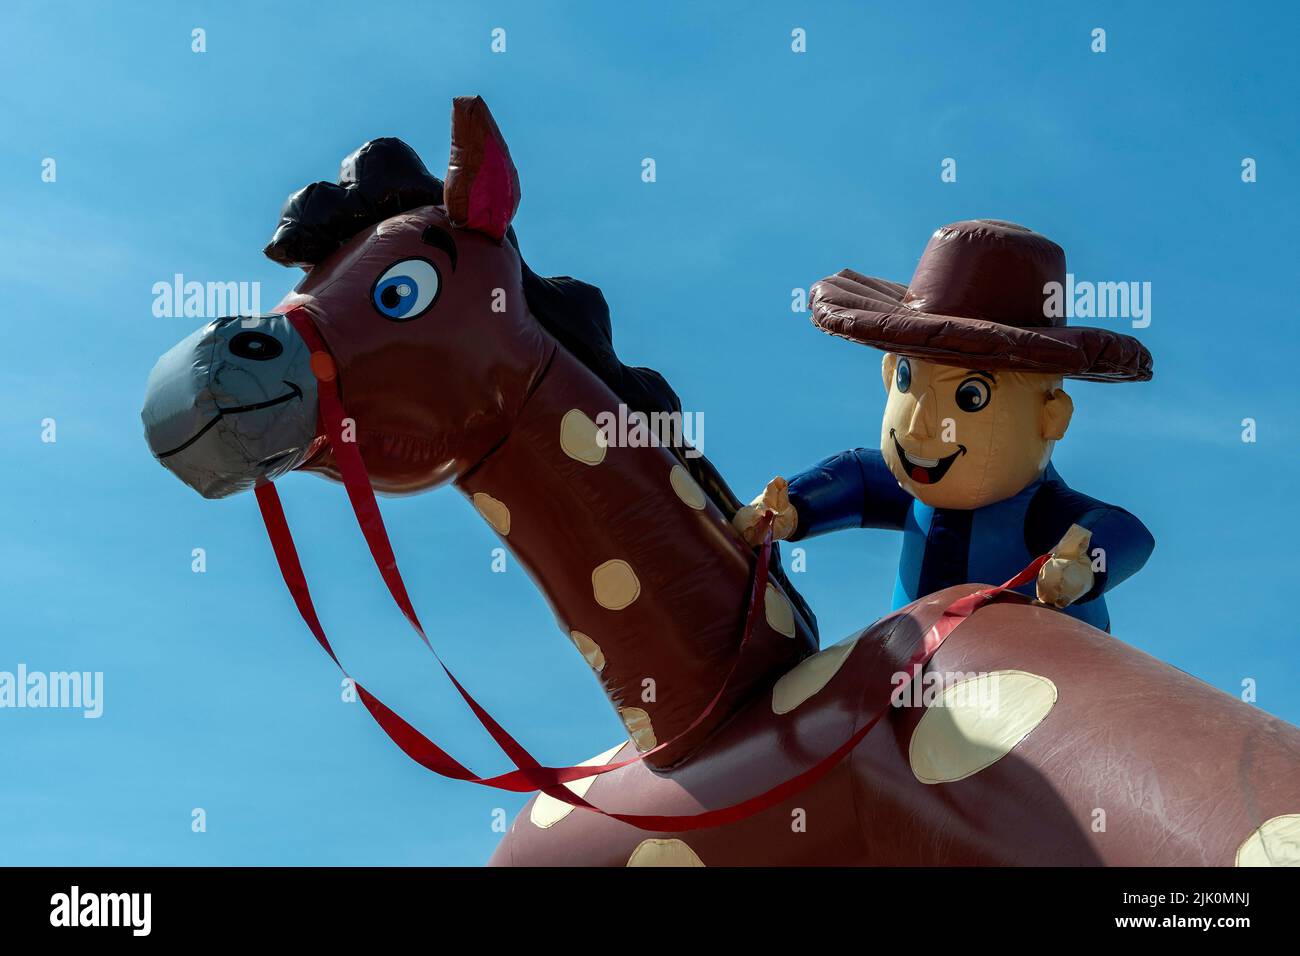 Juguete de vaquero de plástico montando su caballo manchado contra un fondo de cielo azul Foto de stock